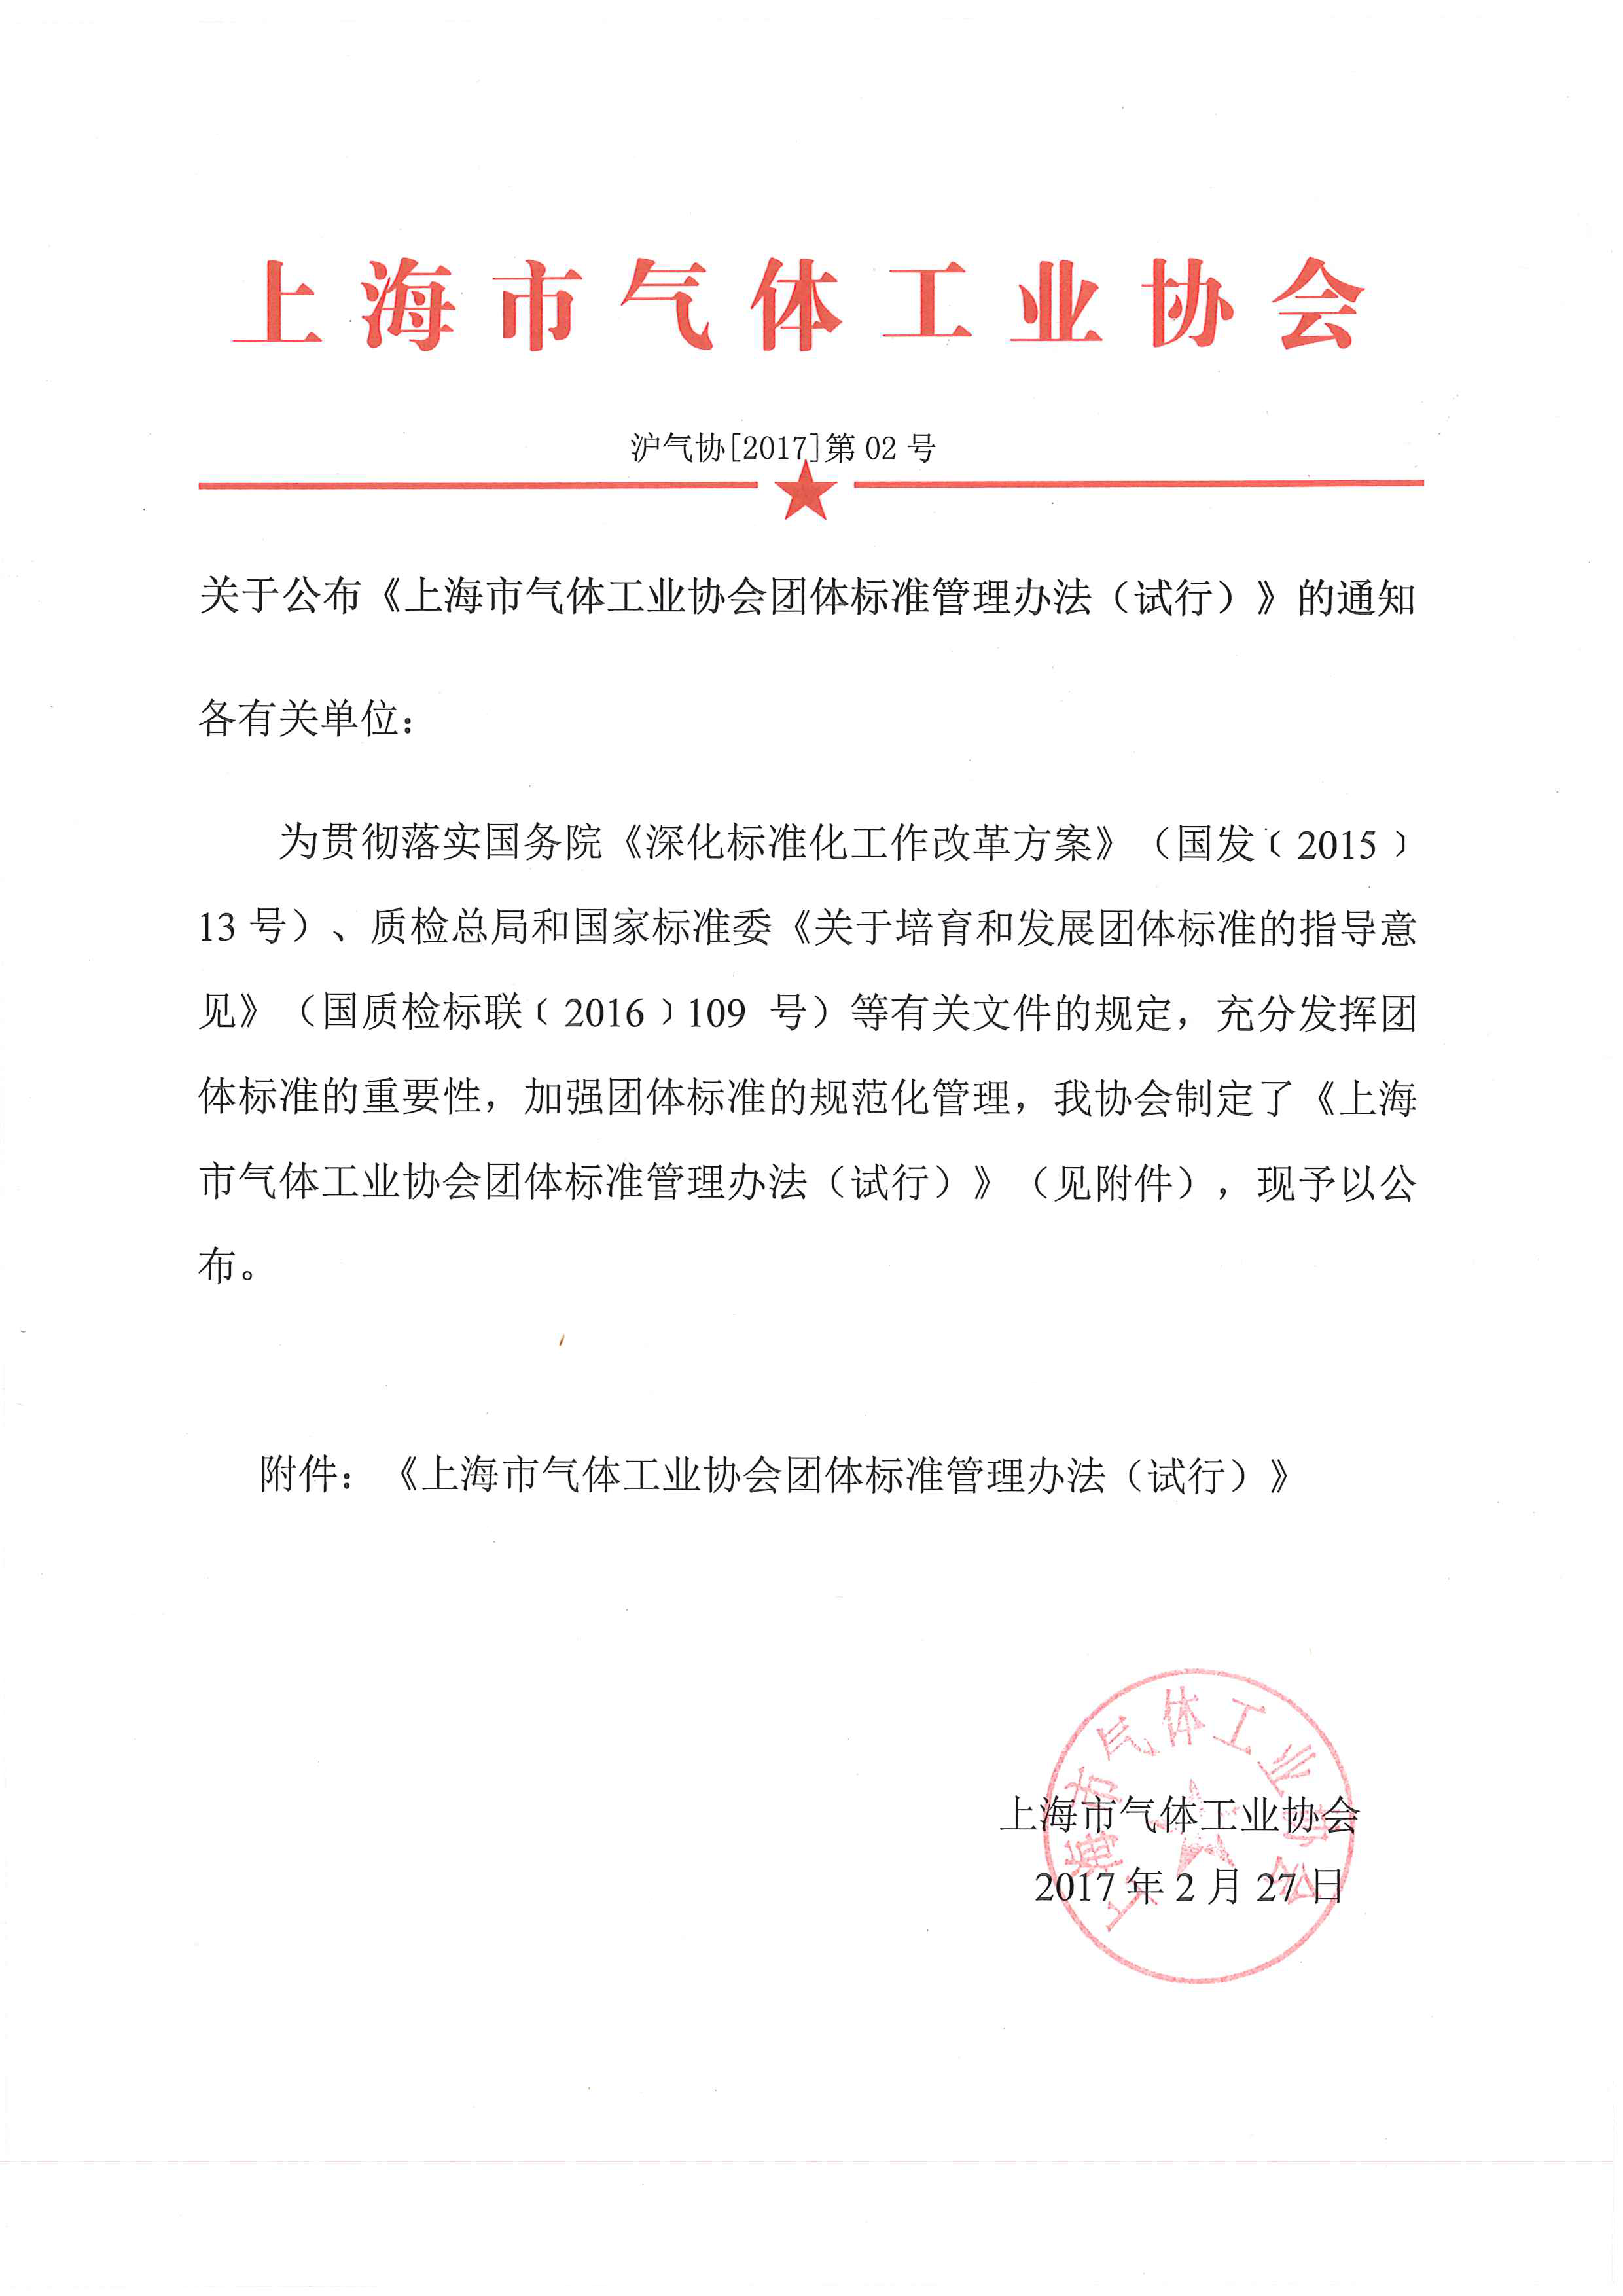 上海市气体工业协会团体标准管理办法(试行)20170227_页面_01.png